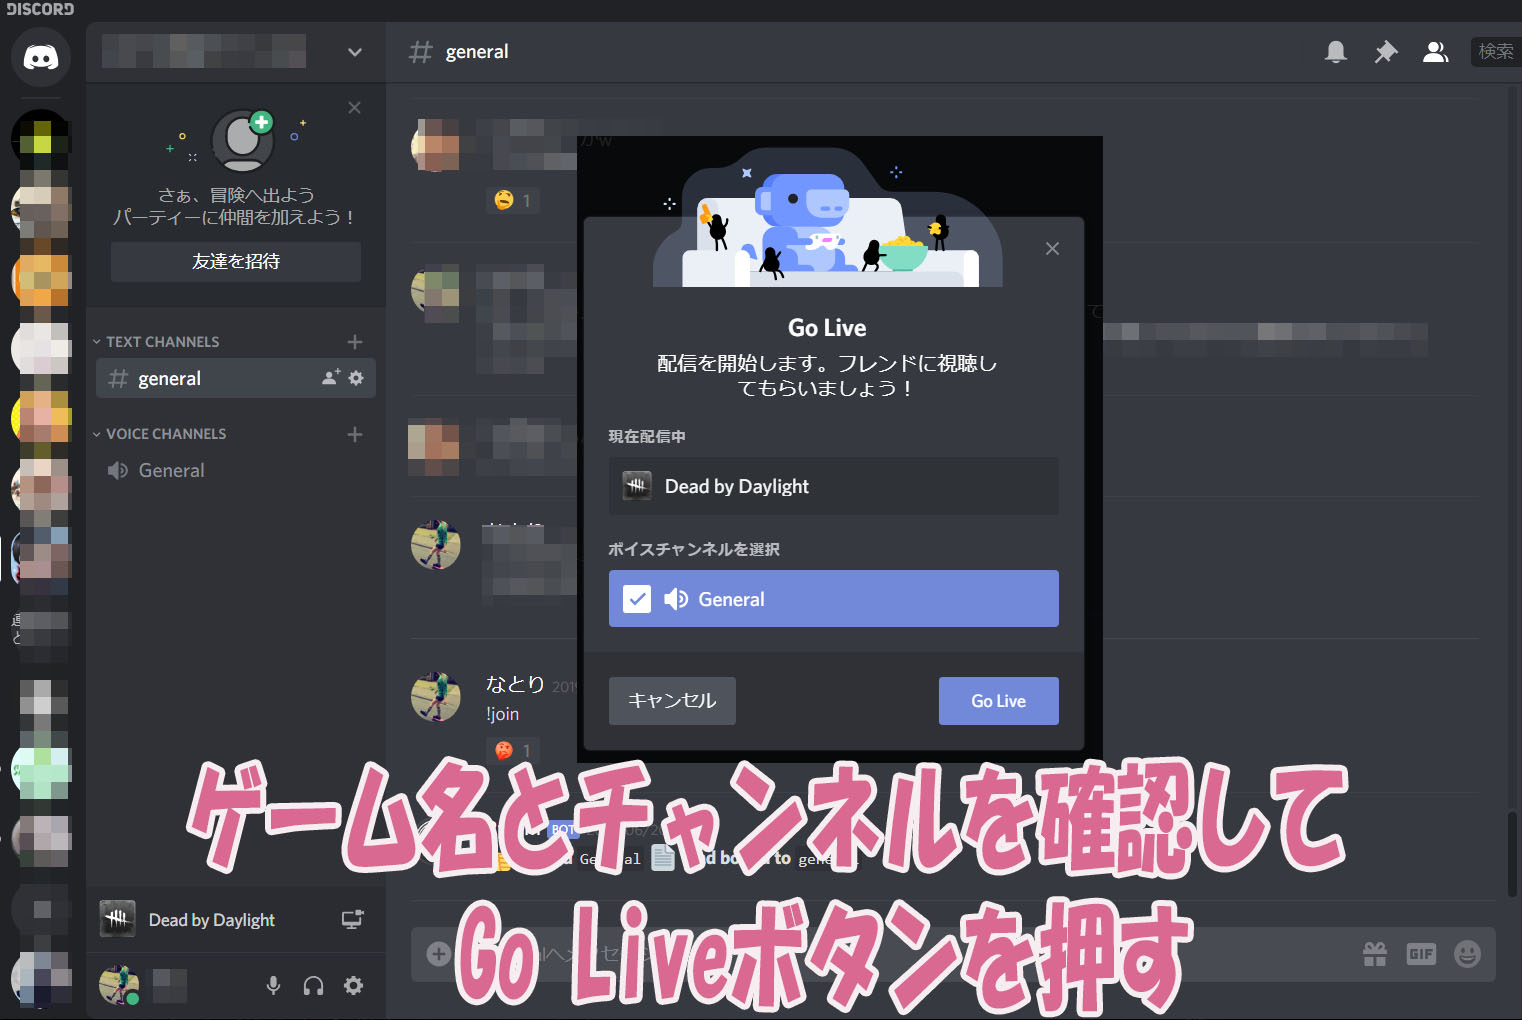 Discordの新機能go Liveがすべてのユーザーに開放された 友達同士で映像を共有しよう なとりのブログ